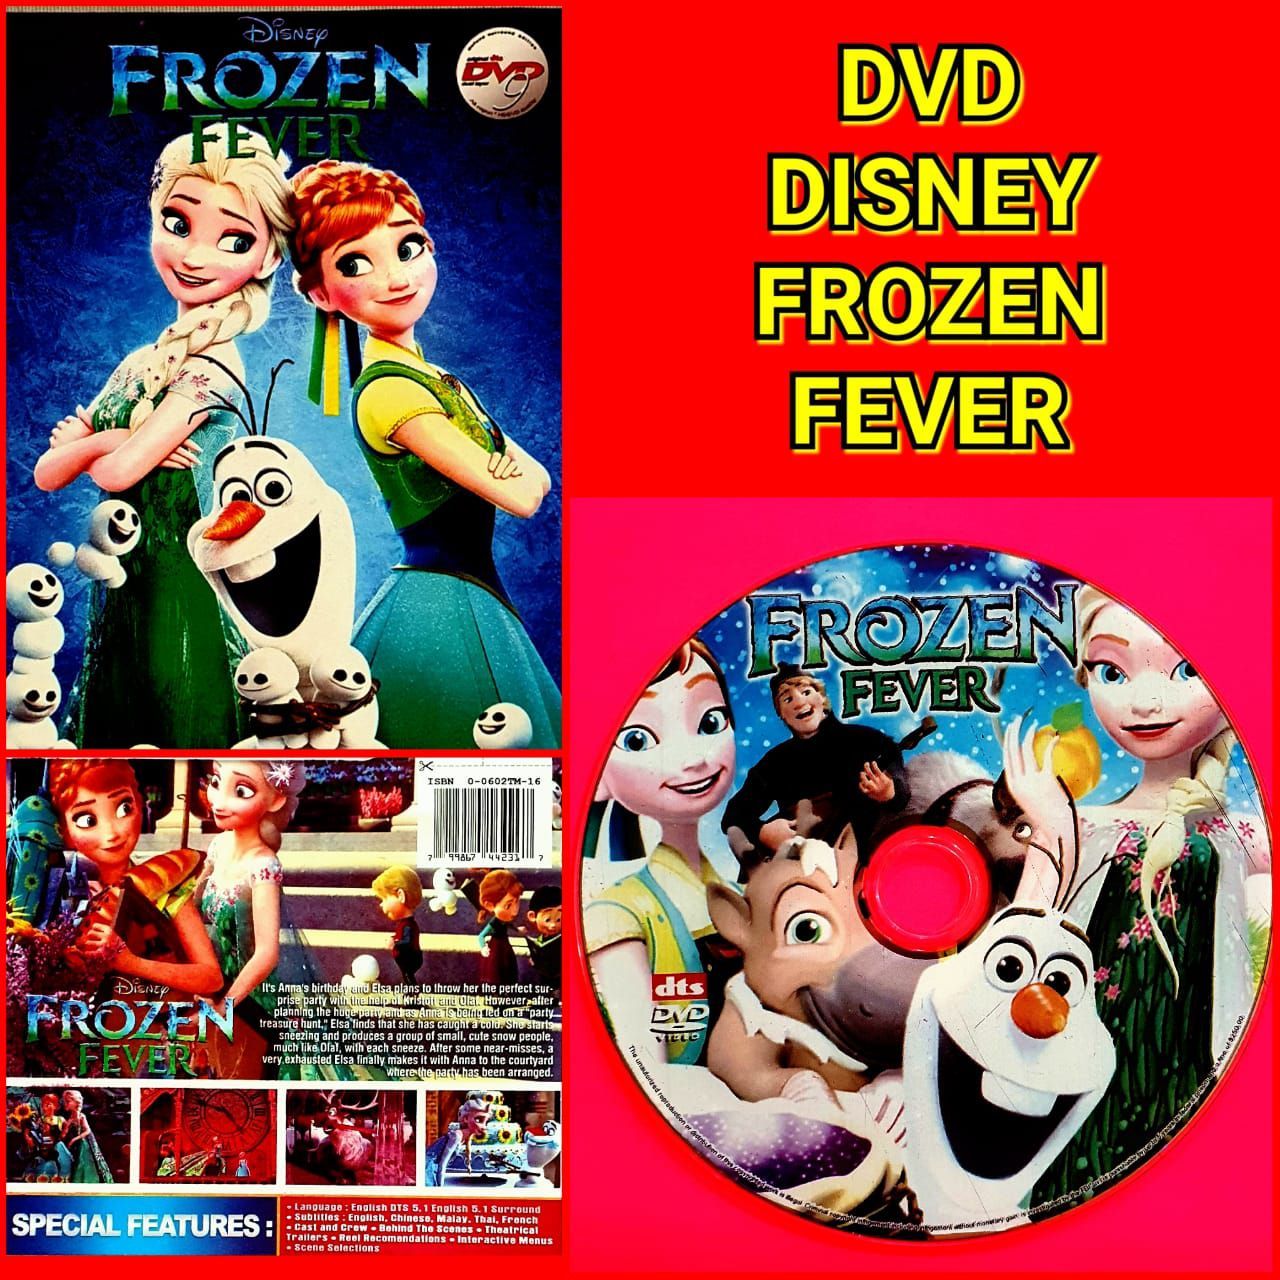 frozen fever movie online free